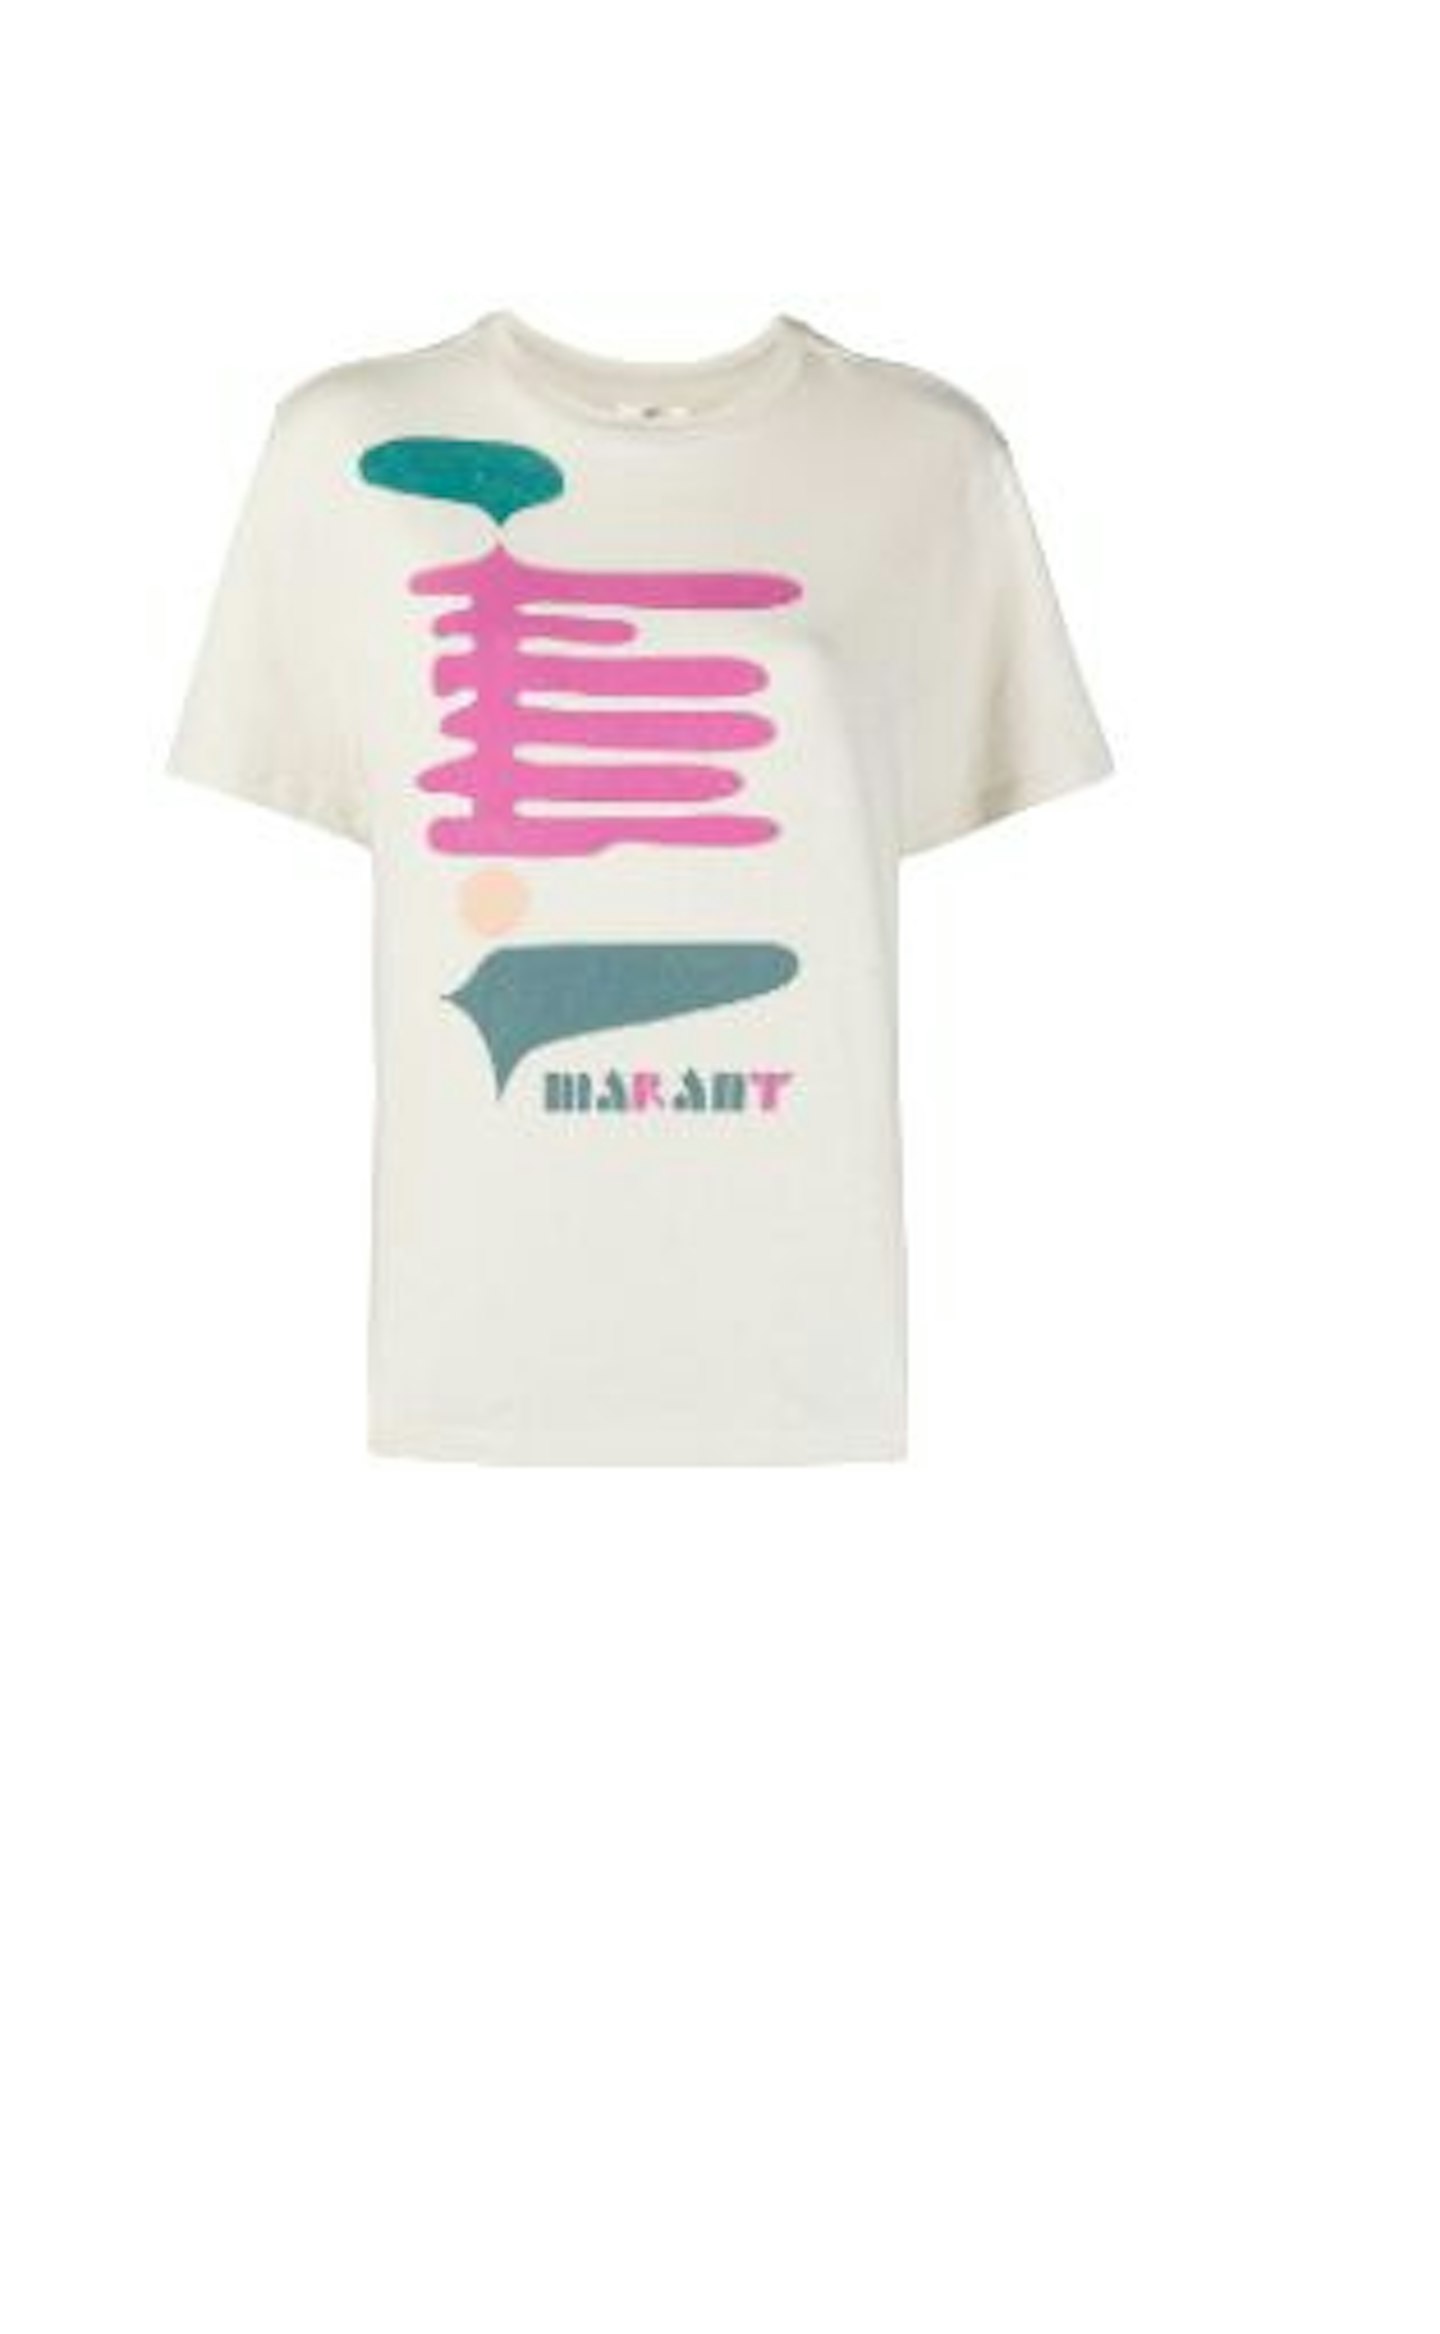 Isabel Marant u00c9toile, Ecru Zewel Graphic T-shirt, £120